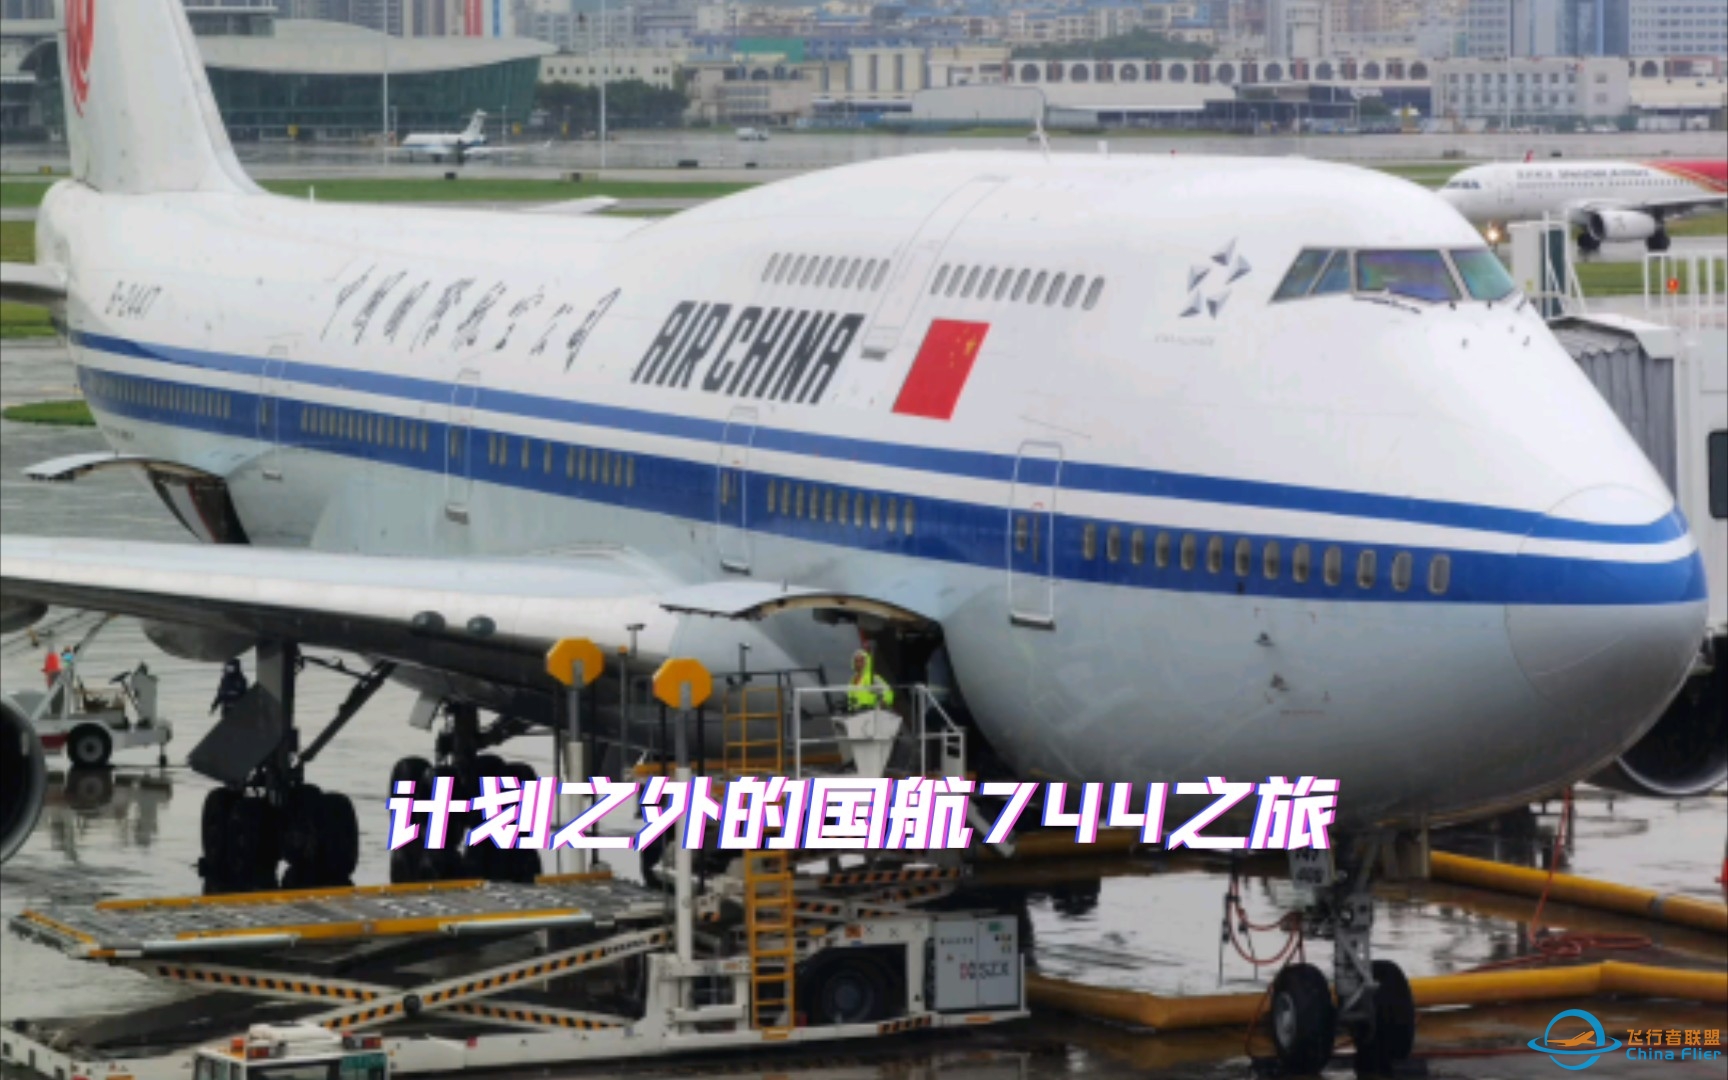 从机龄0.6年到28.6年，原本想体验深航最新空客A321NX，却意外坐上国航第二老的波音747-400（B-2447）-3471 